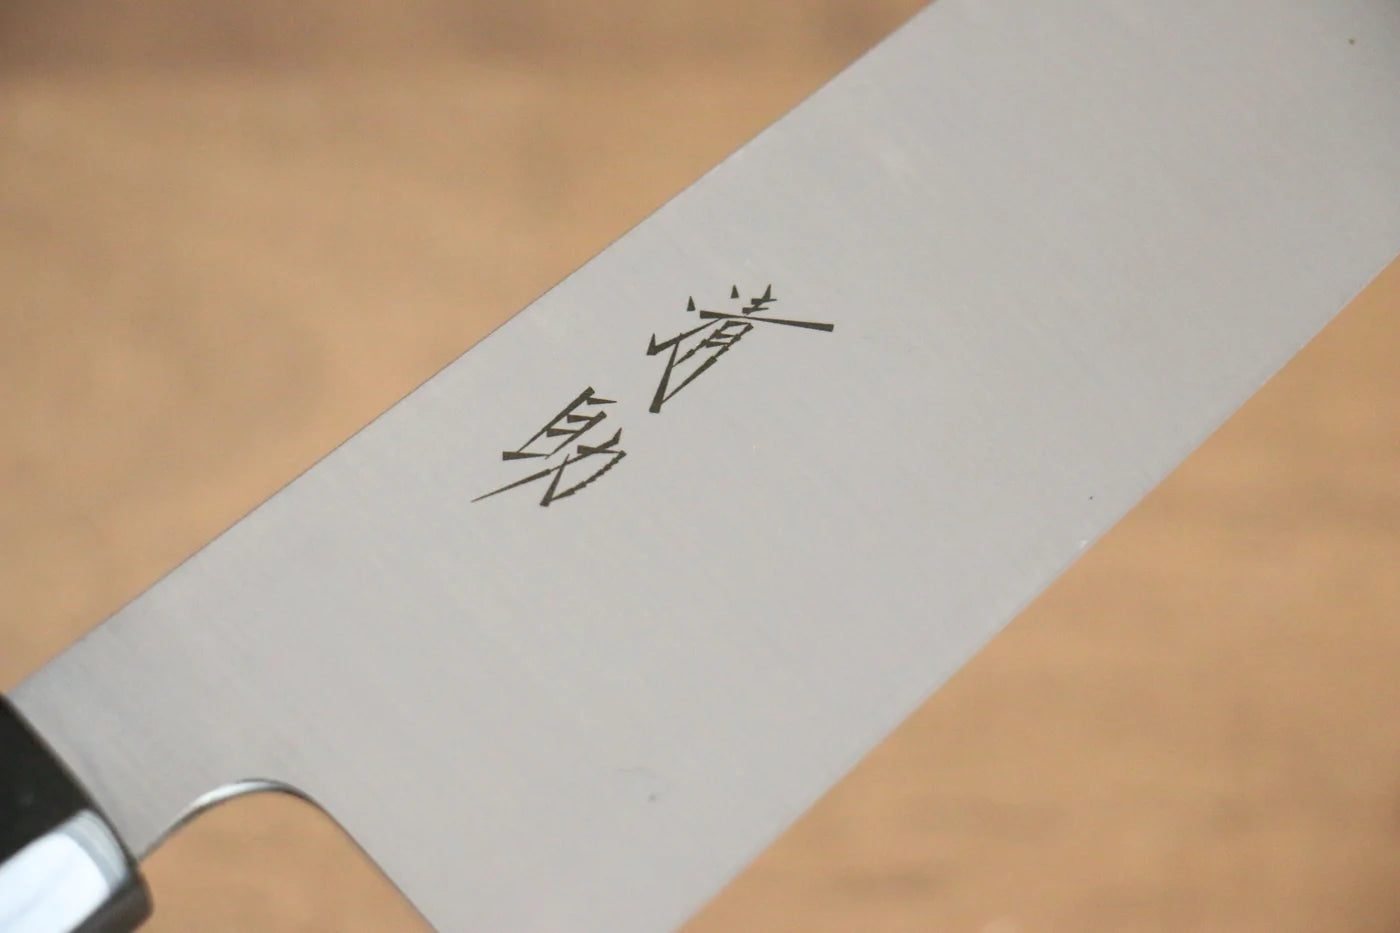 Santoku-Mehrzweckmesser der Marke Seisuke aus schwedischem Stahl, japanisches Messer, 180 mm Griff aus Kastanienholz